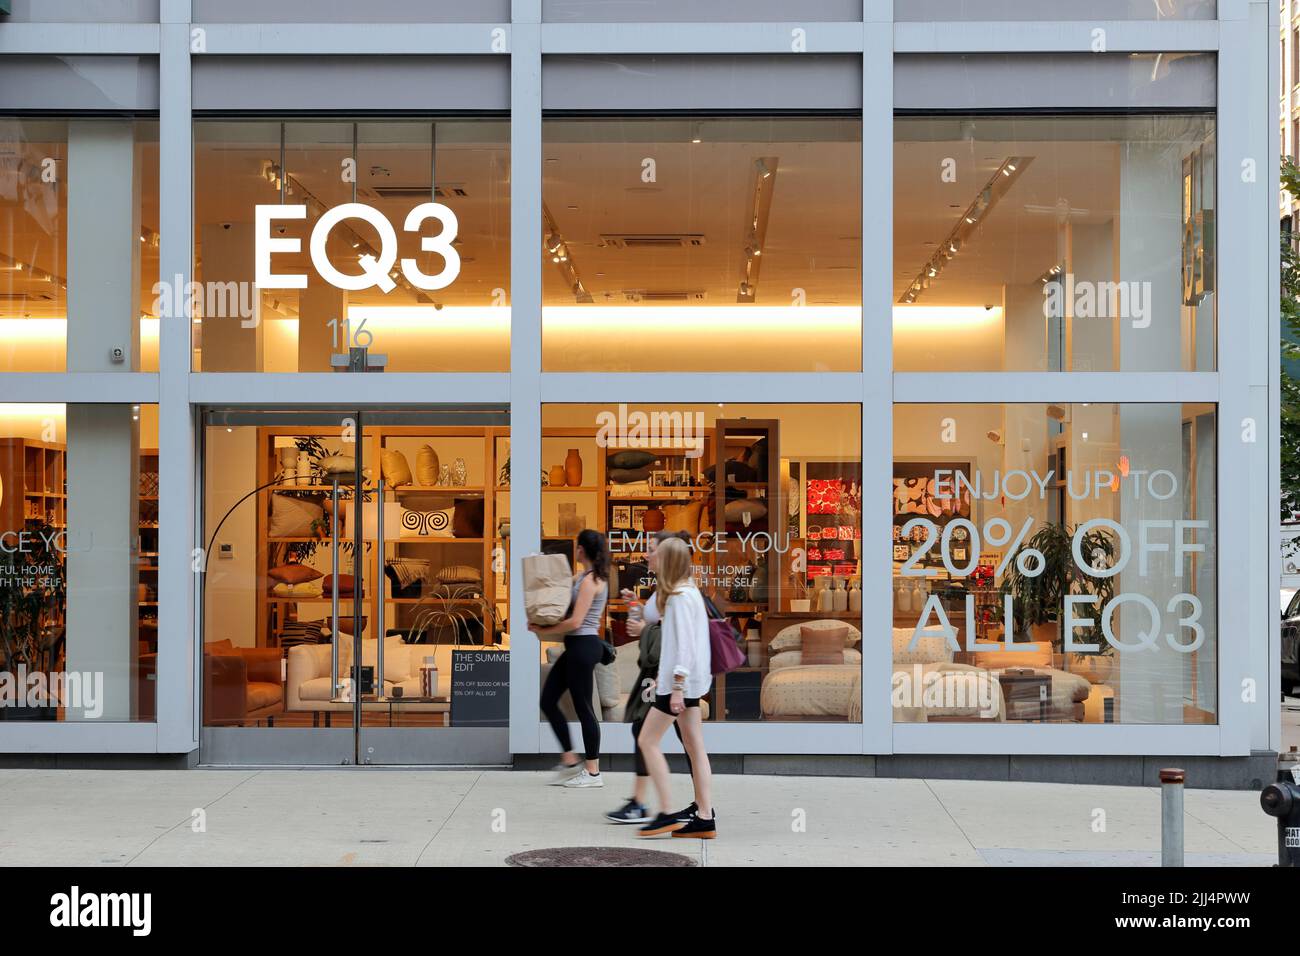 EQ3, 116 7th Ave, New York, NYC foto di un negozio di articoli per la casa e mobili nel quartiere Chelsea a Manhattan. Foto Stock